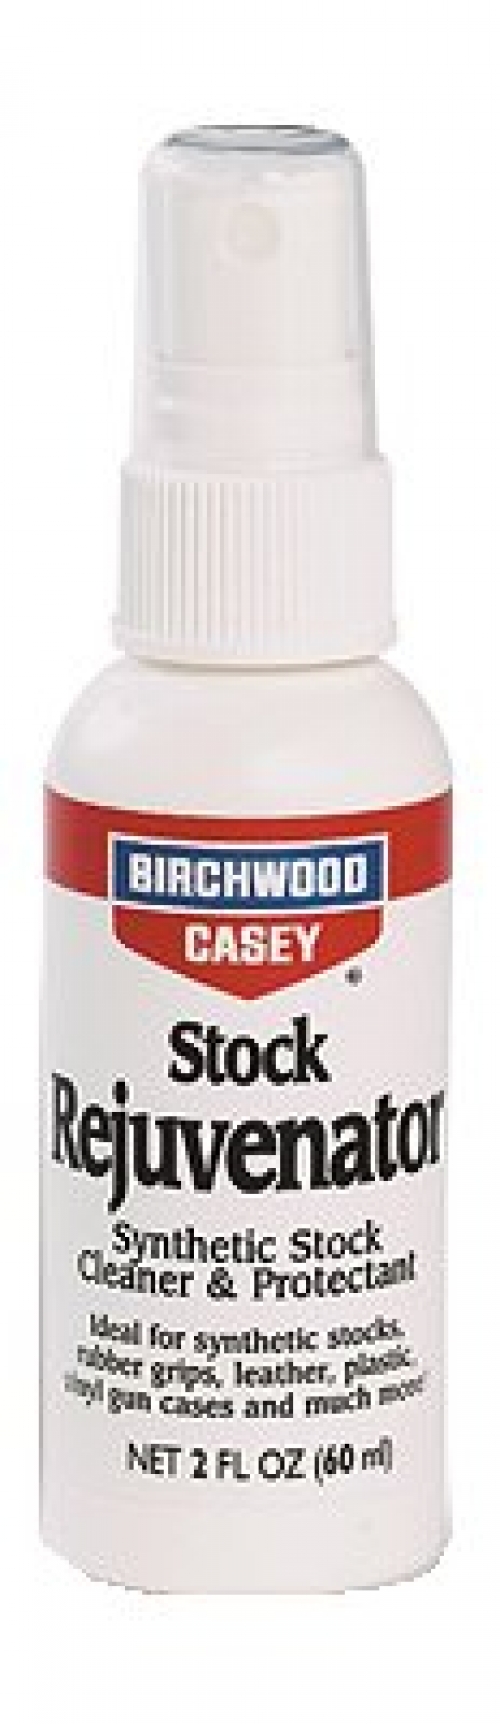 Birchwood Casey Stock Restorer & Protectant